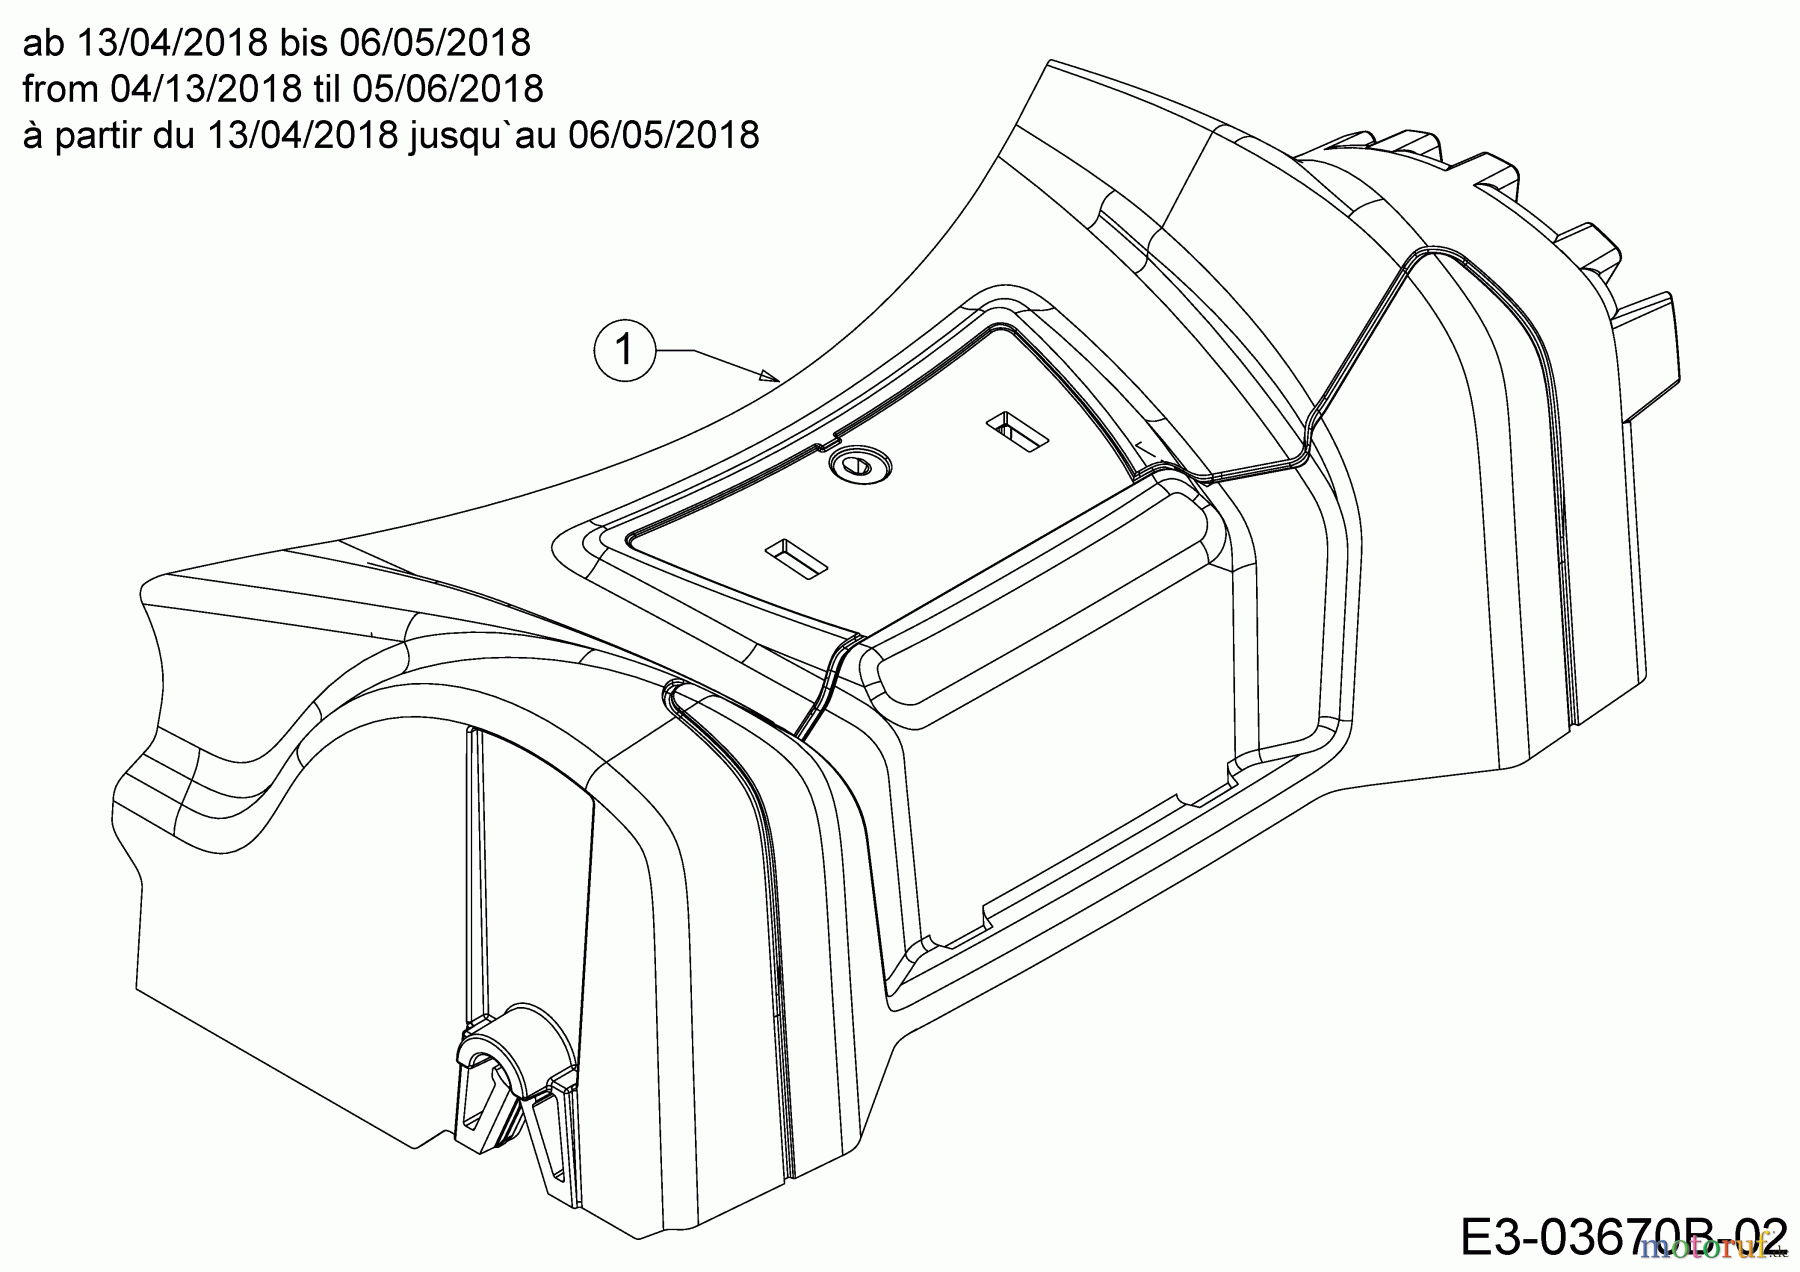  MTD Motormäher mit Antrieb SP 46 B 12A-TABG600  (2018) Abdeckung Vorderachse ab 13/04/2018 bis 06/05/2018